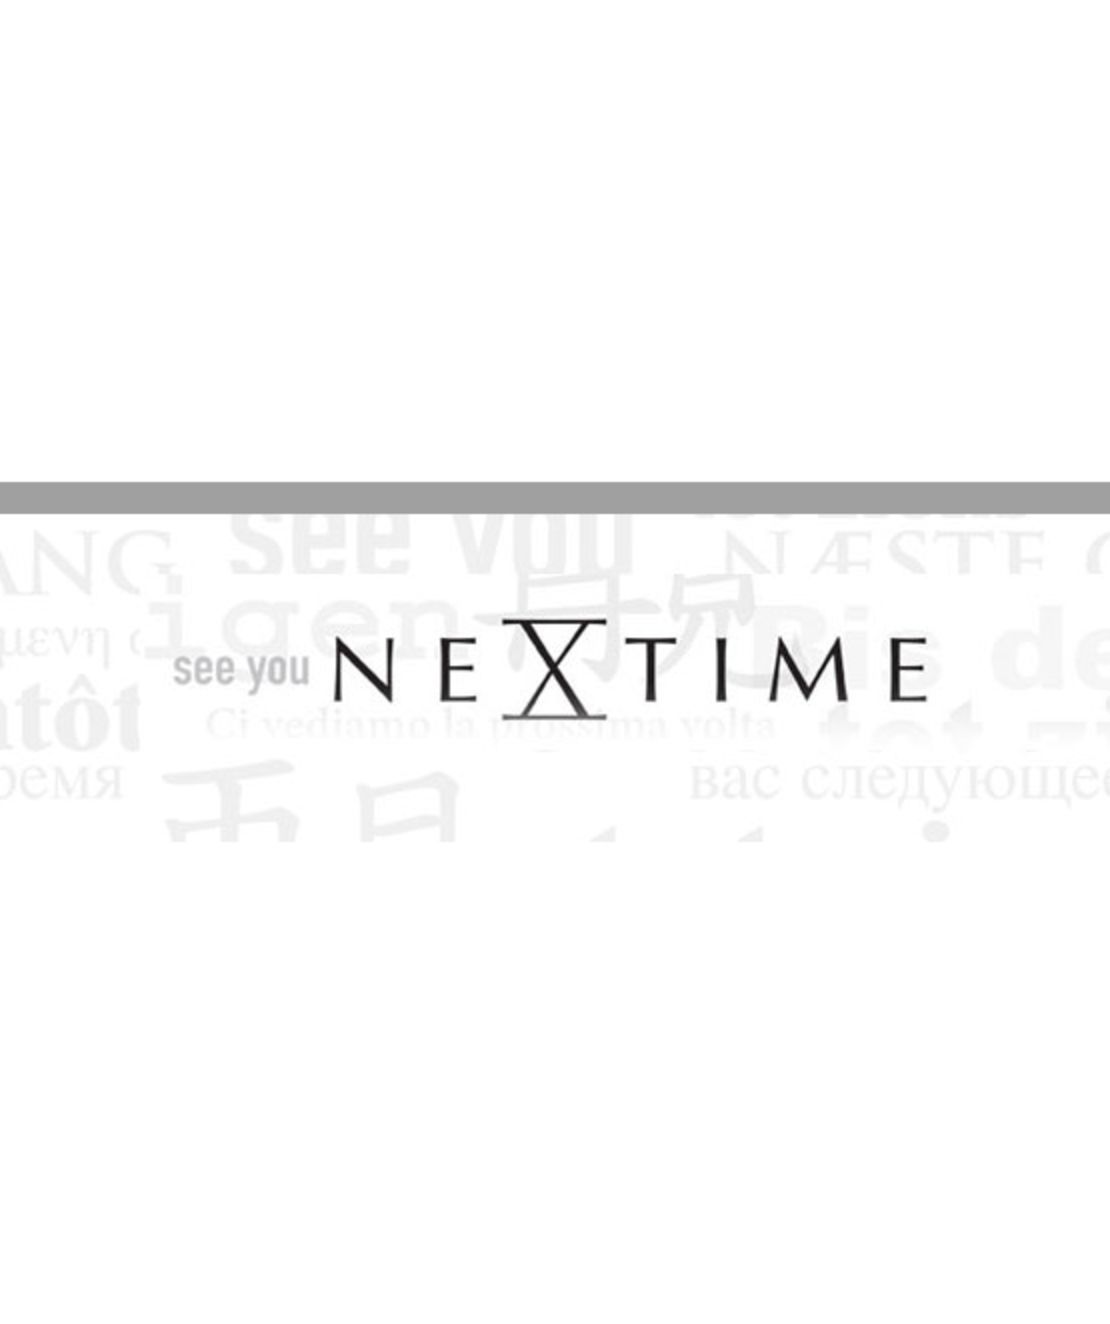 שעון קיר NeXtime דגם iPad